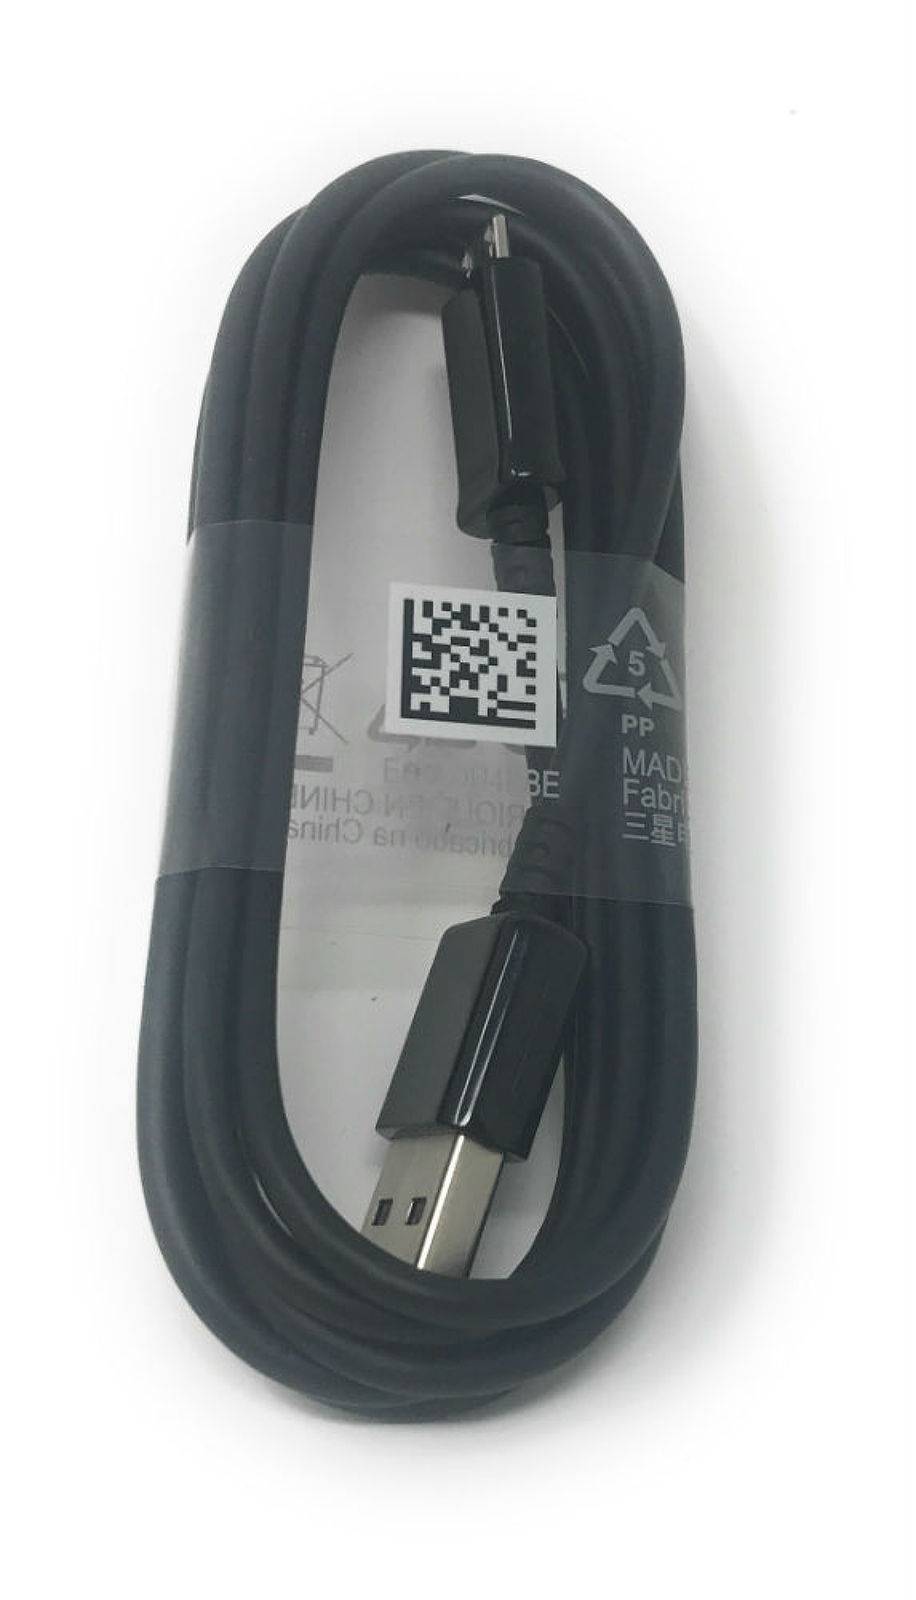 USB Kabel Ladekabel ausziehbar für Samsung Galaxy S3 Mini Value 